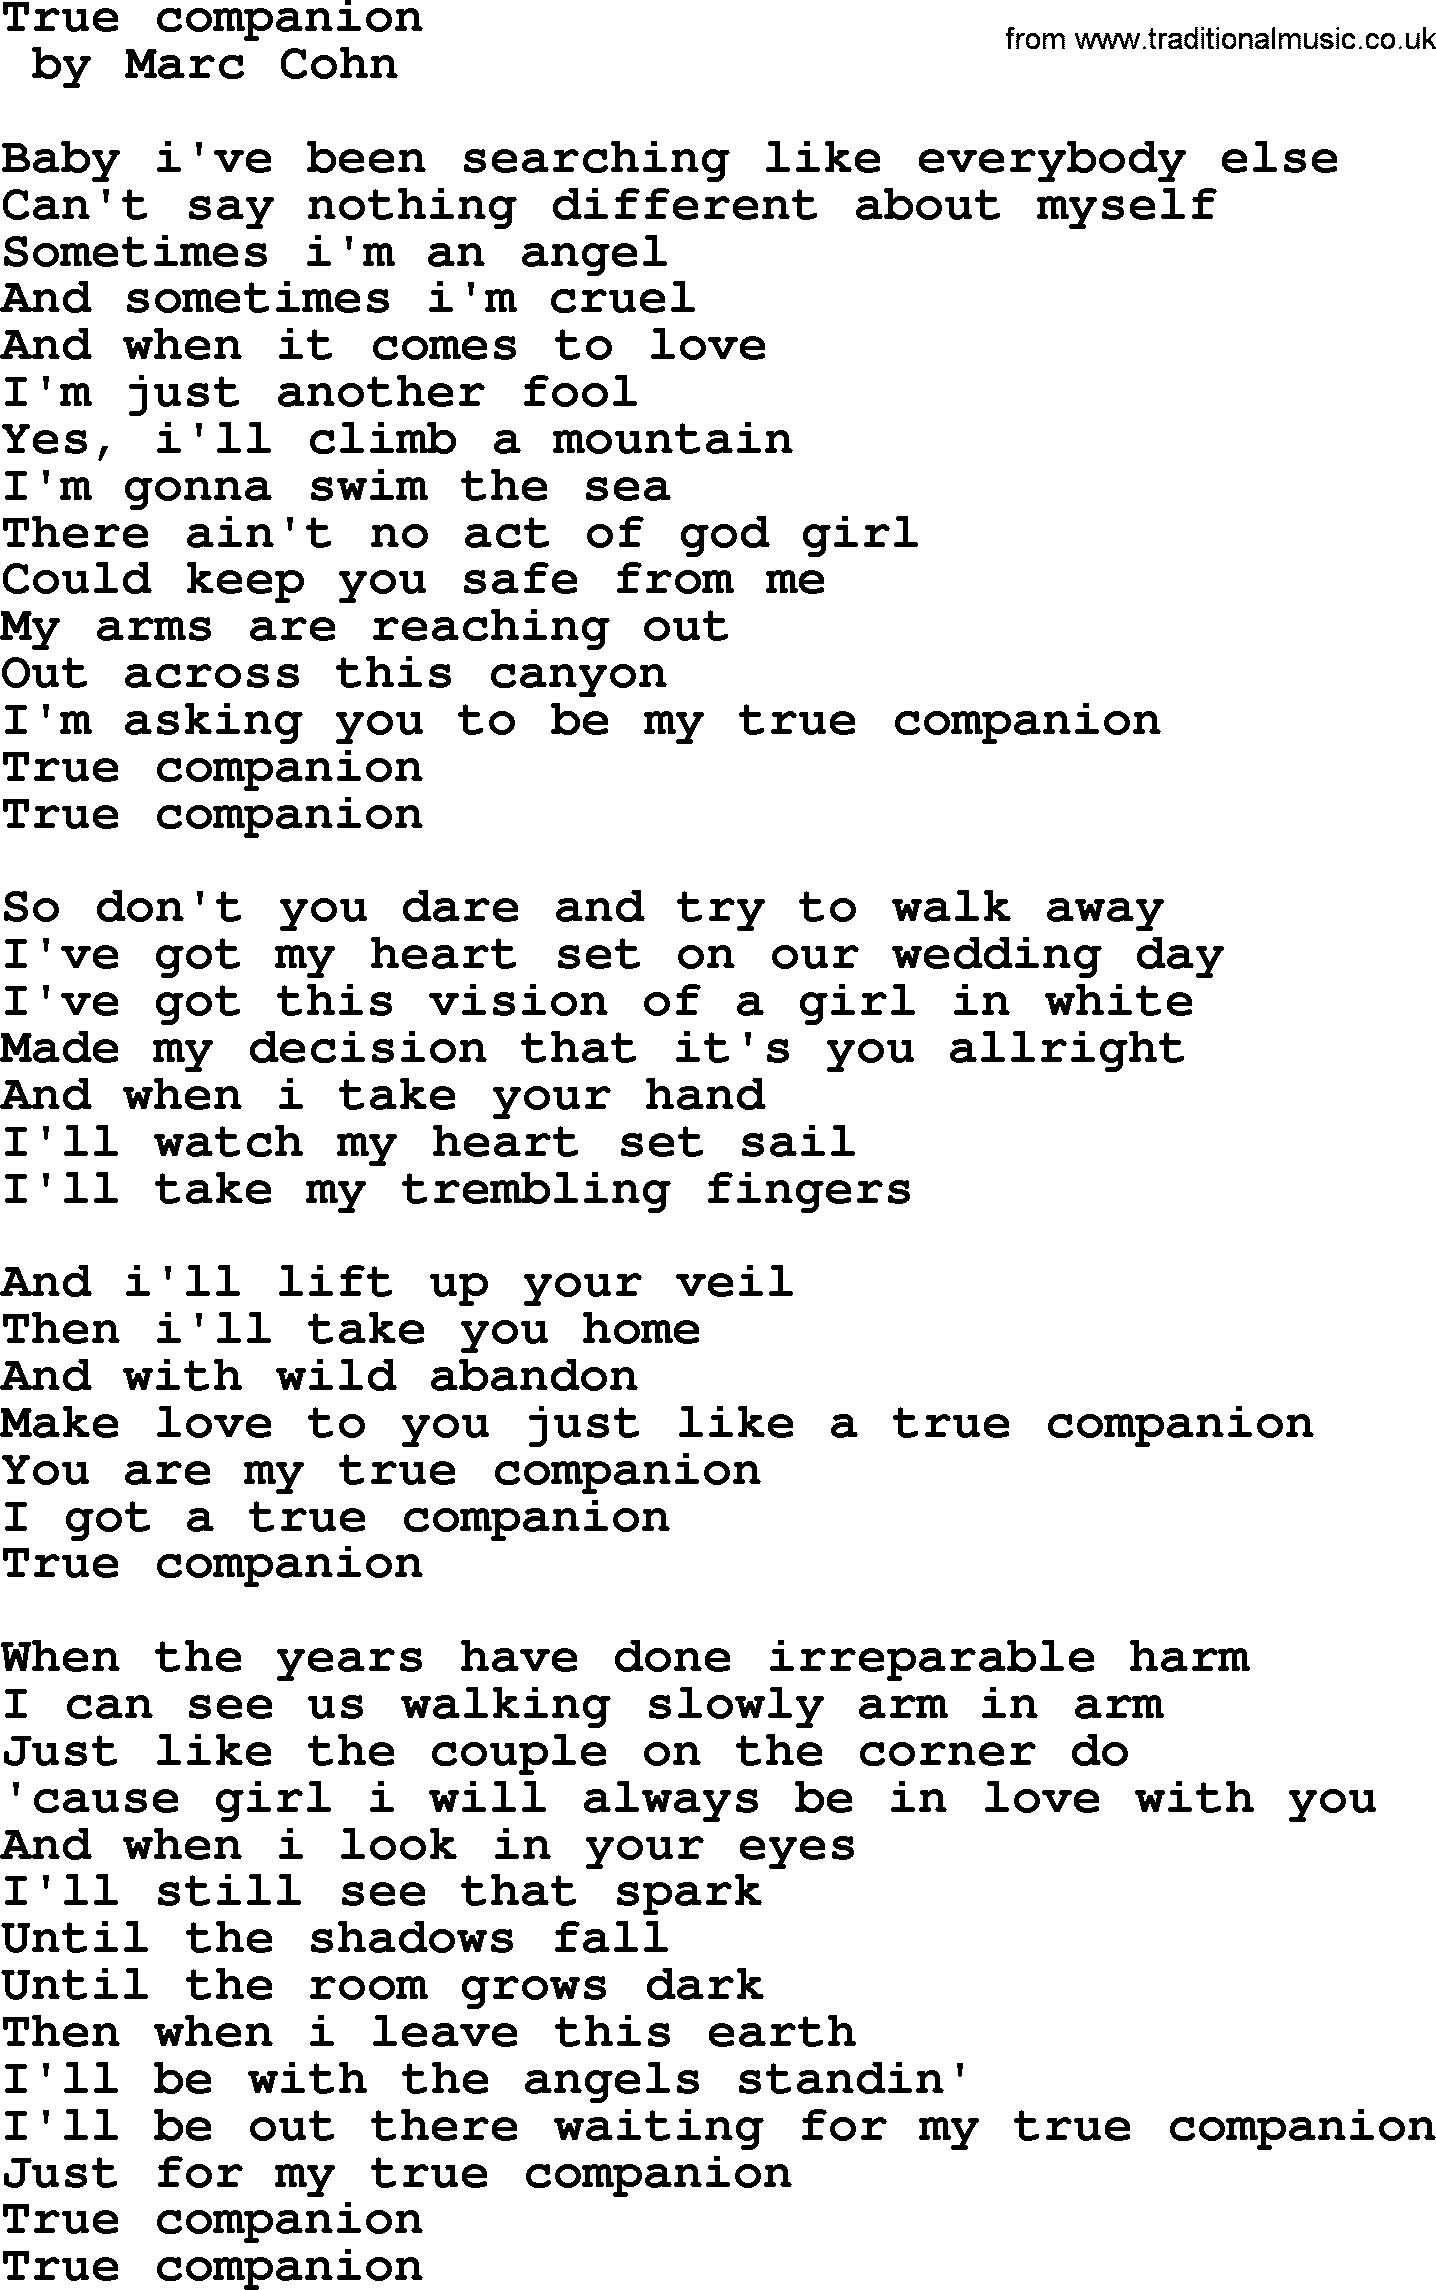 Bruce Springsteen song: True Companion lyrics